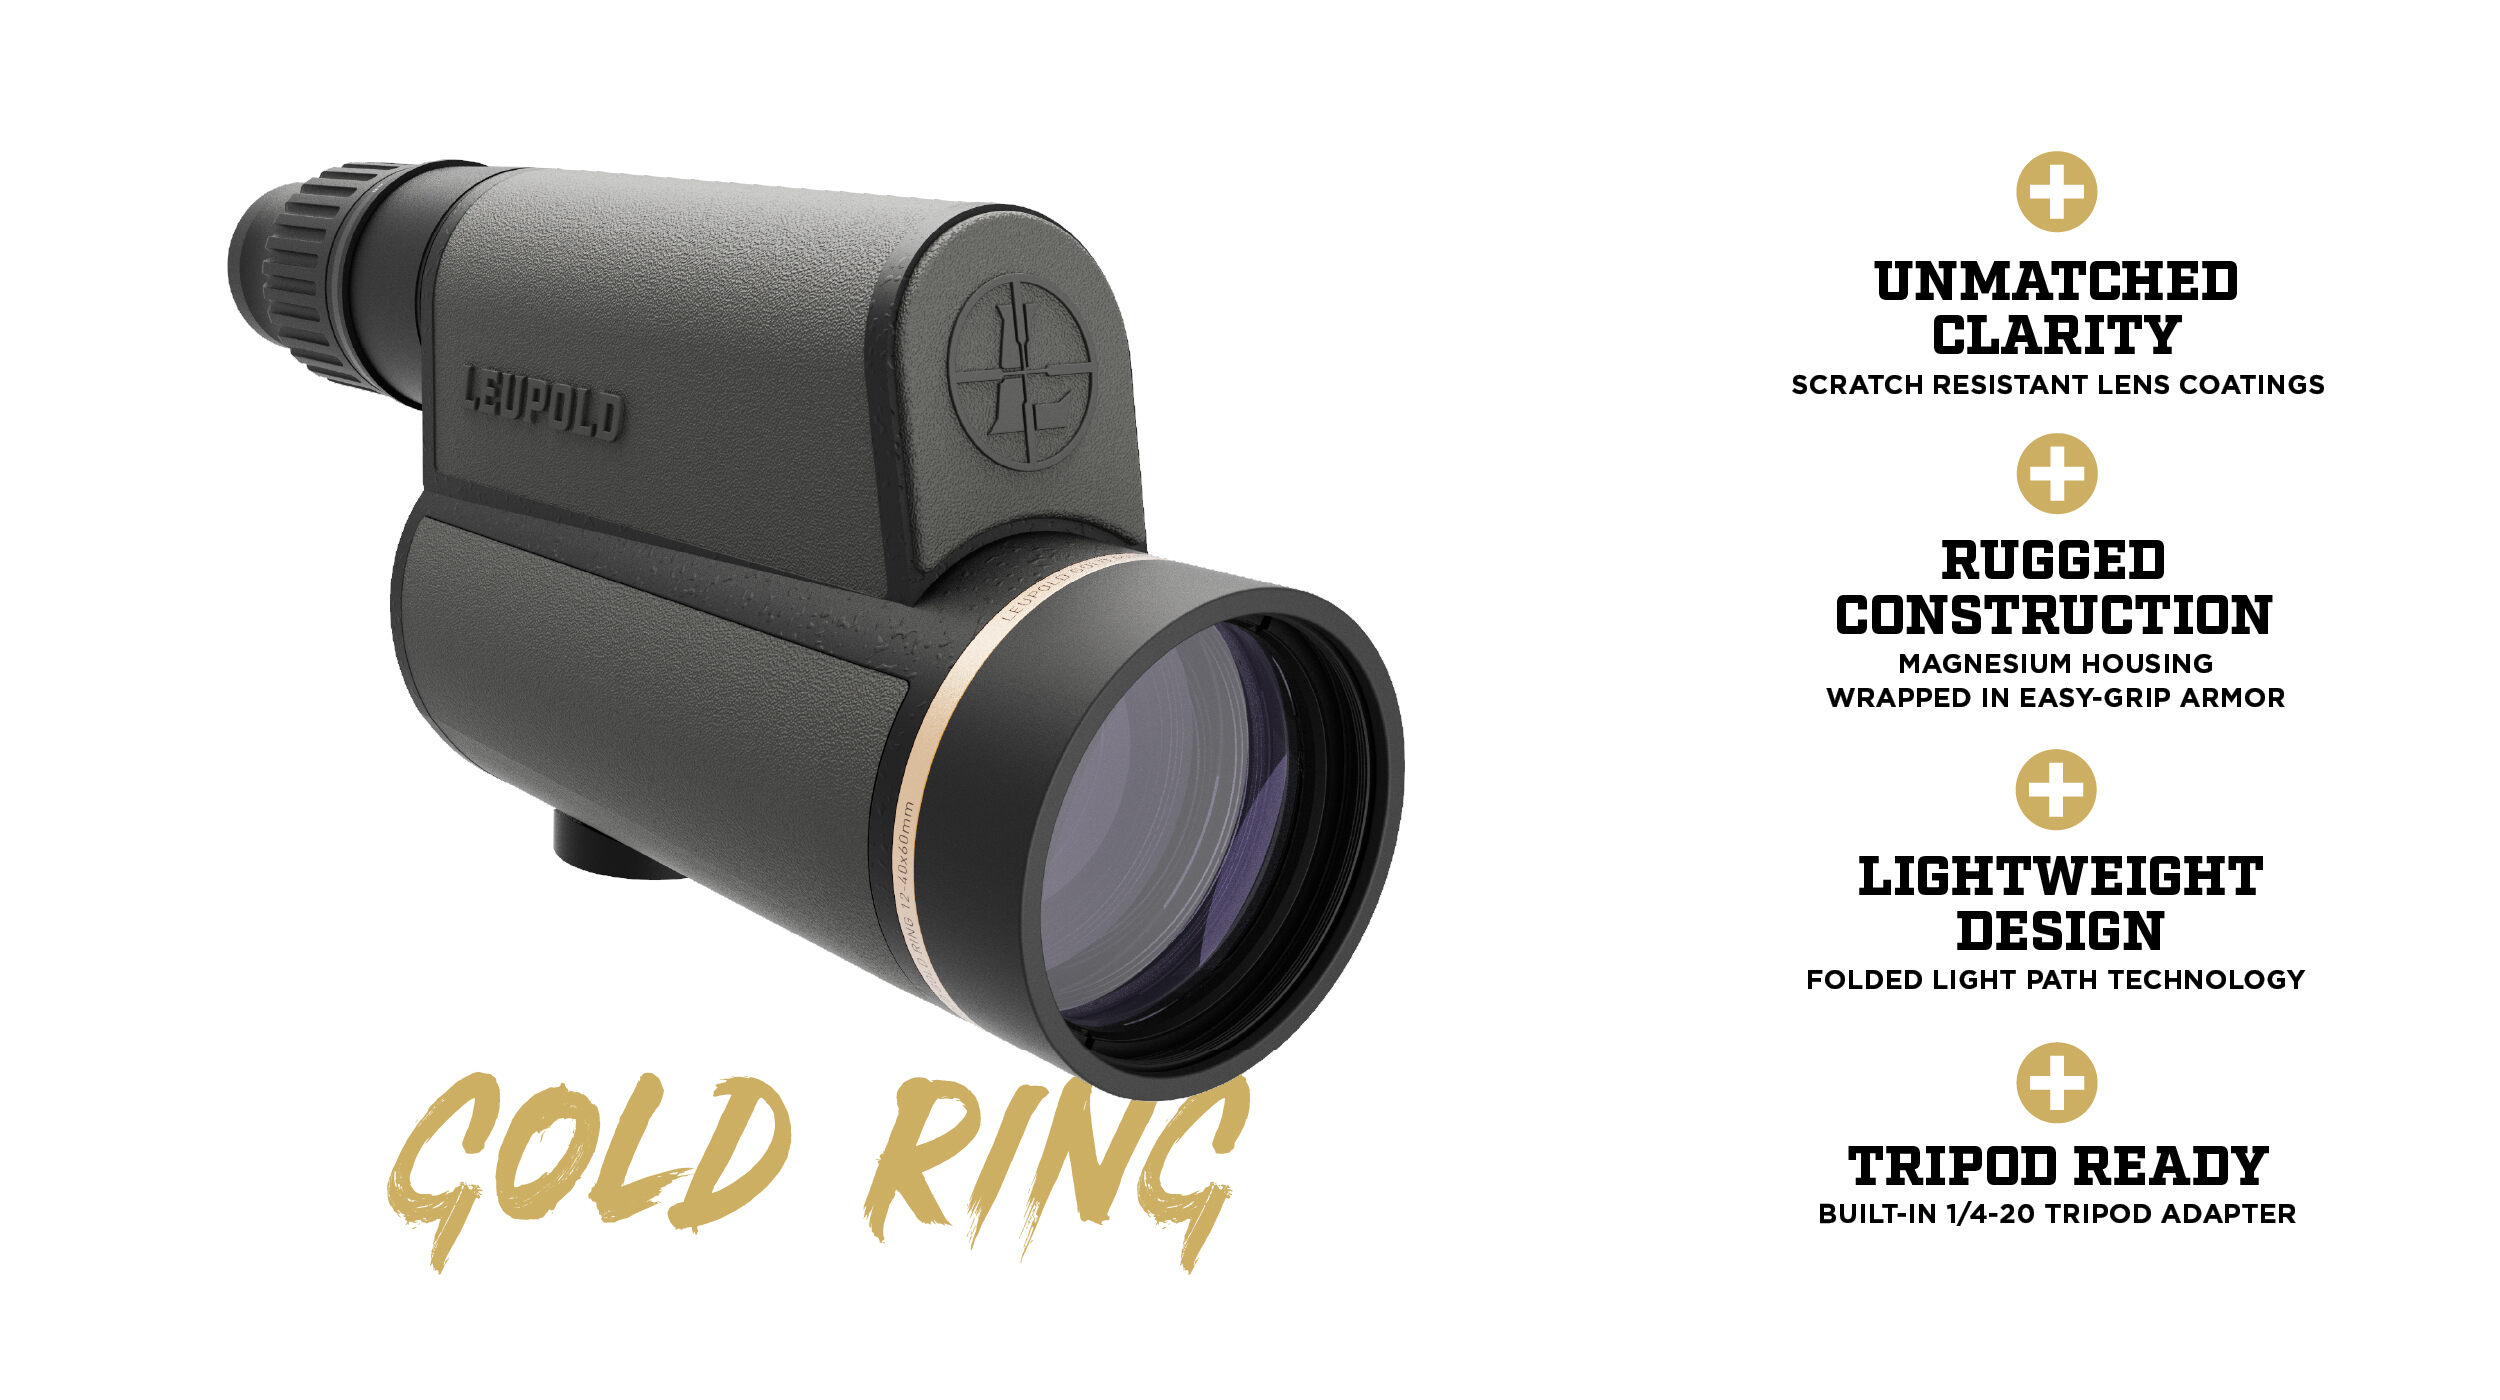 Gold Ring spotter scopes